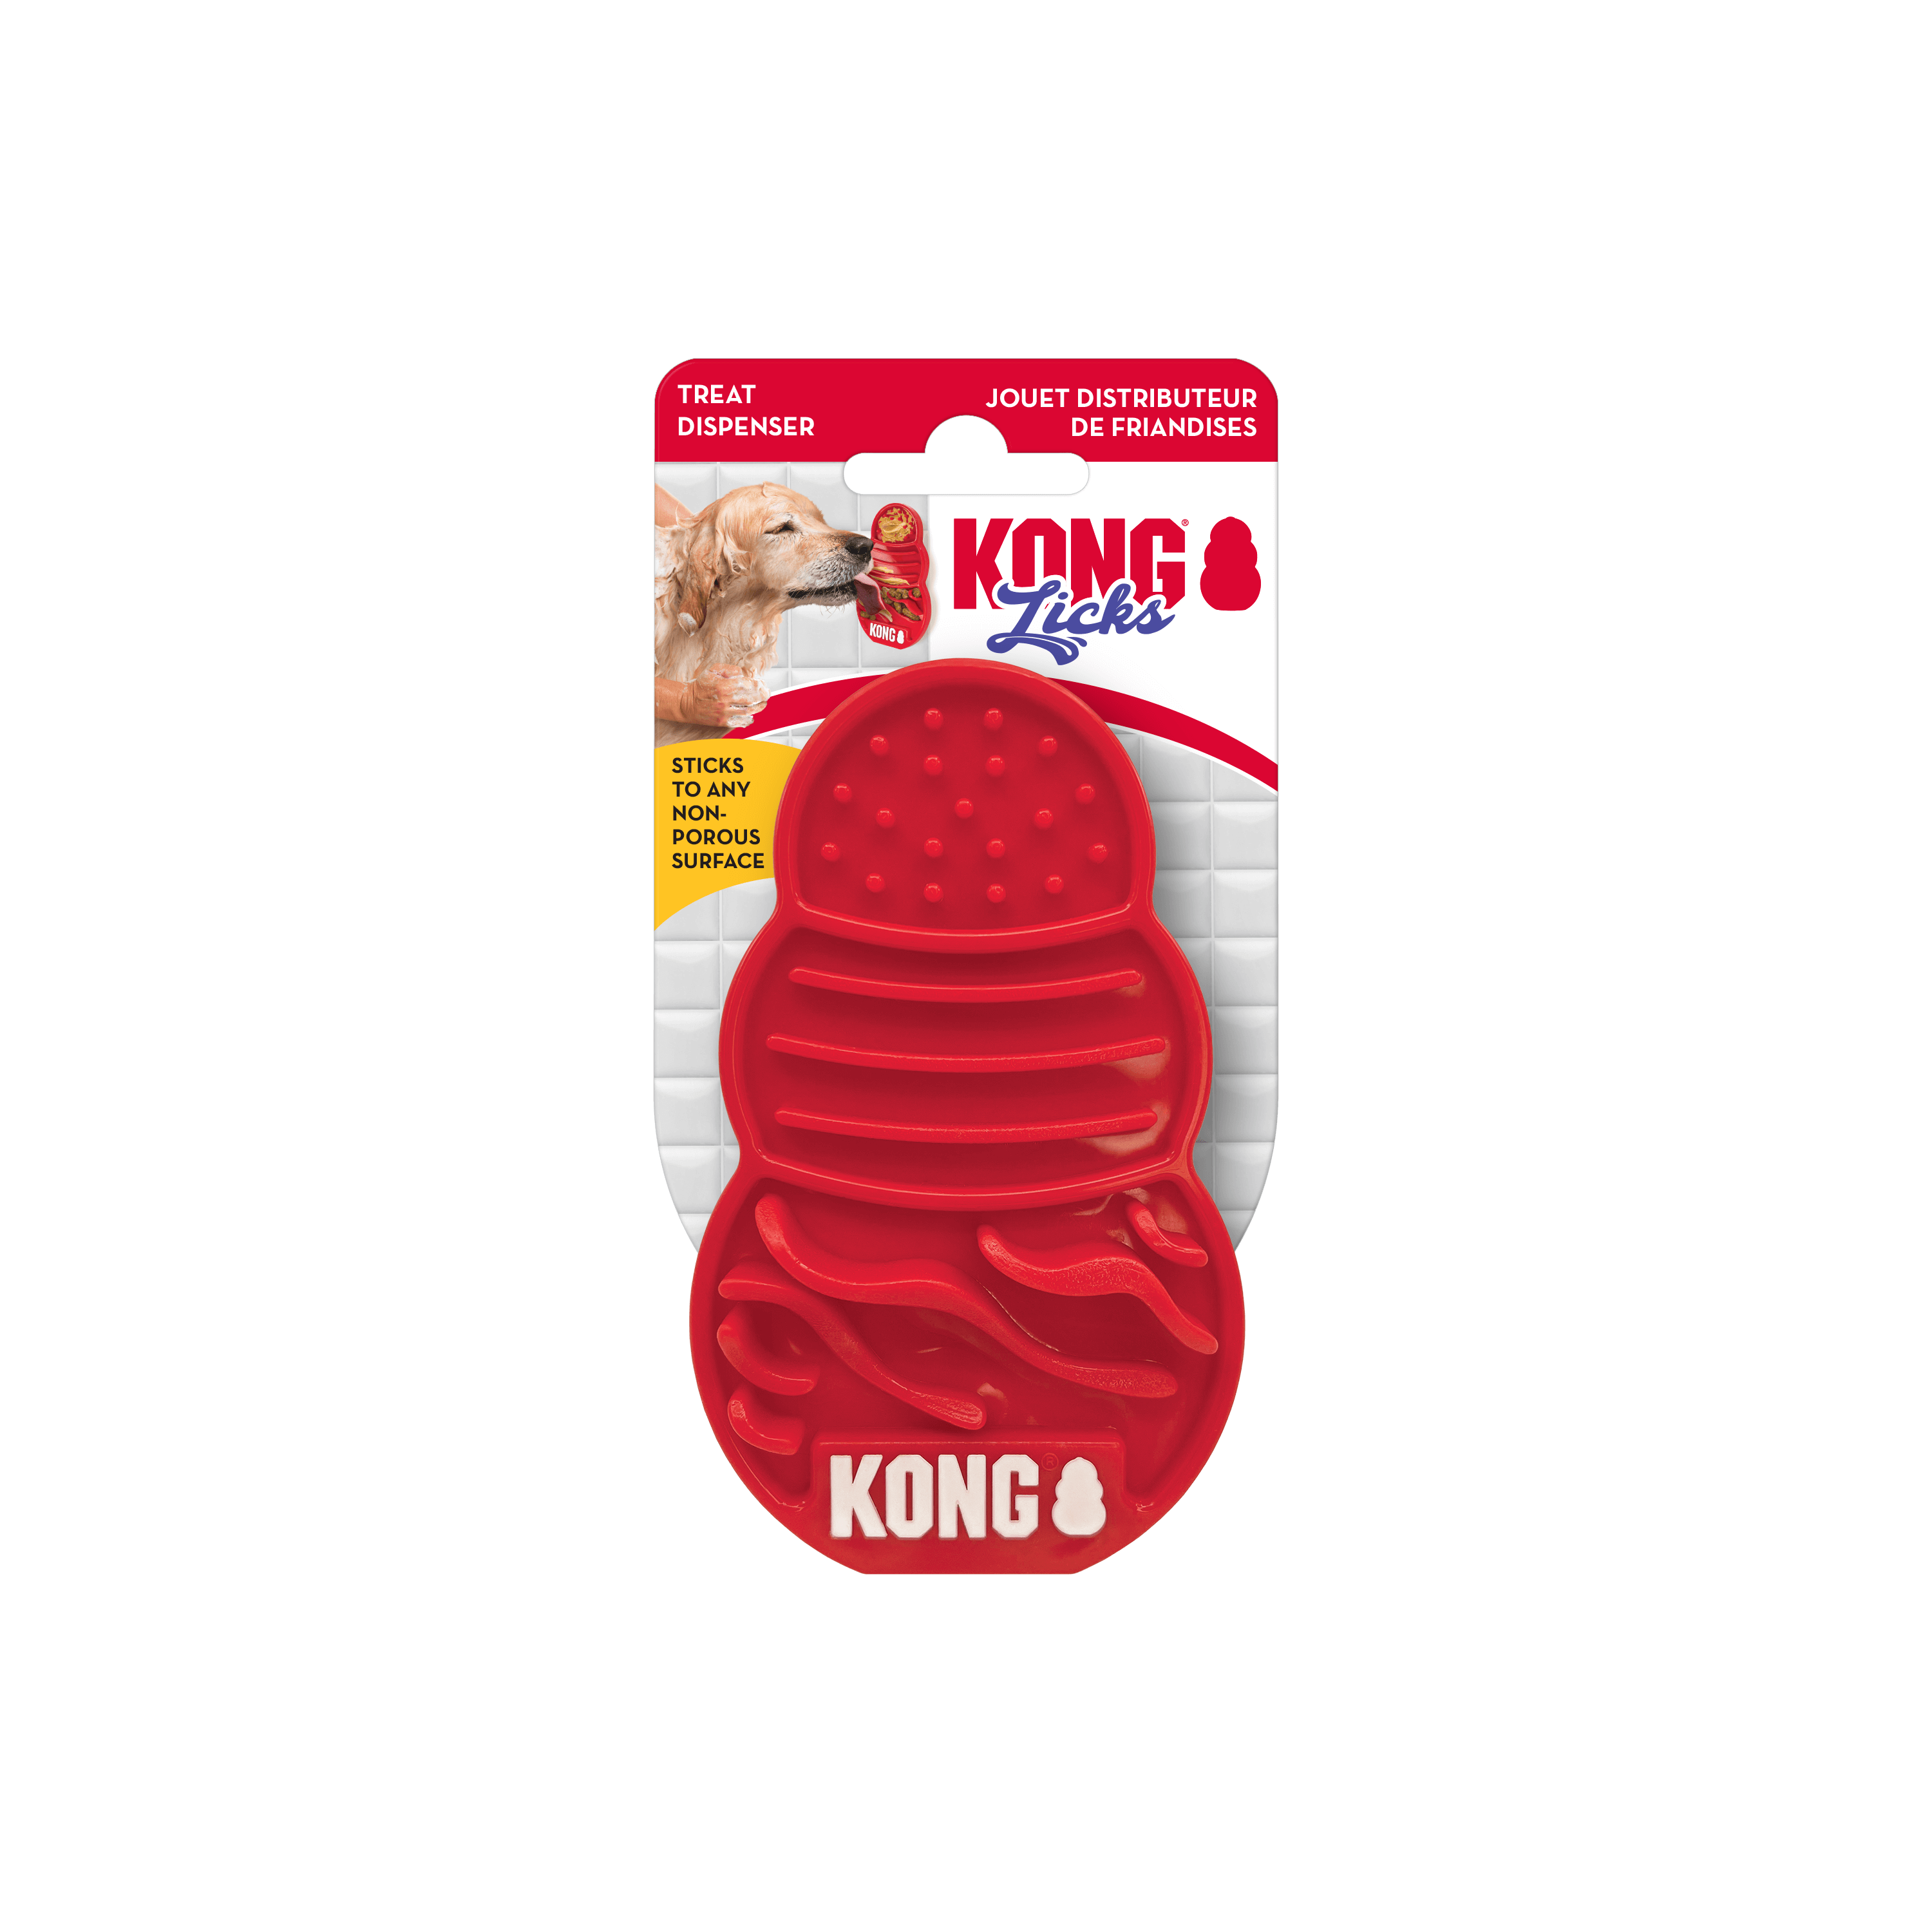 KONG - Licks (For Dogs)